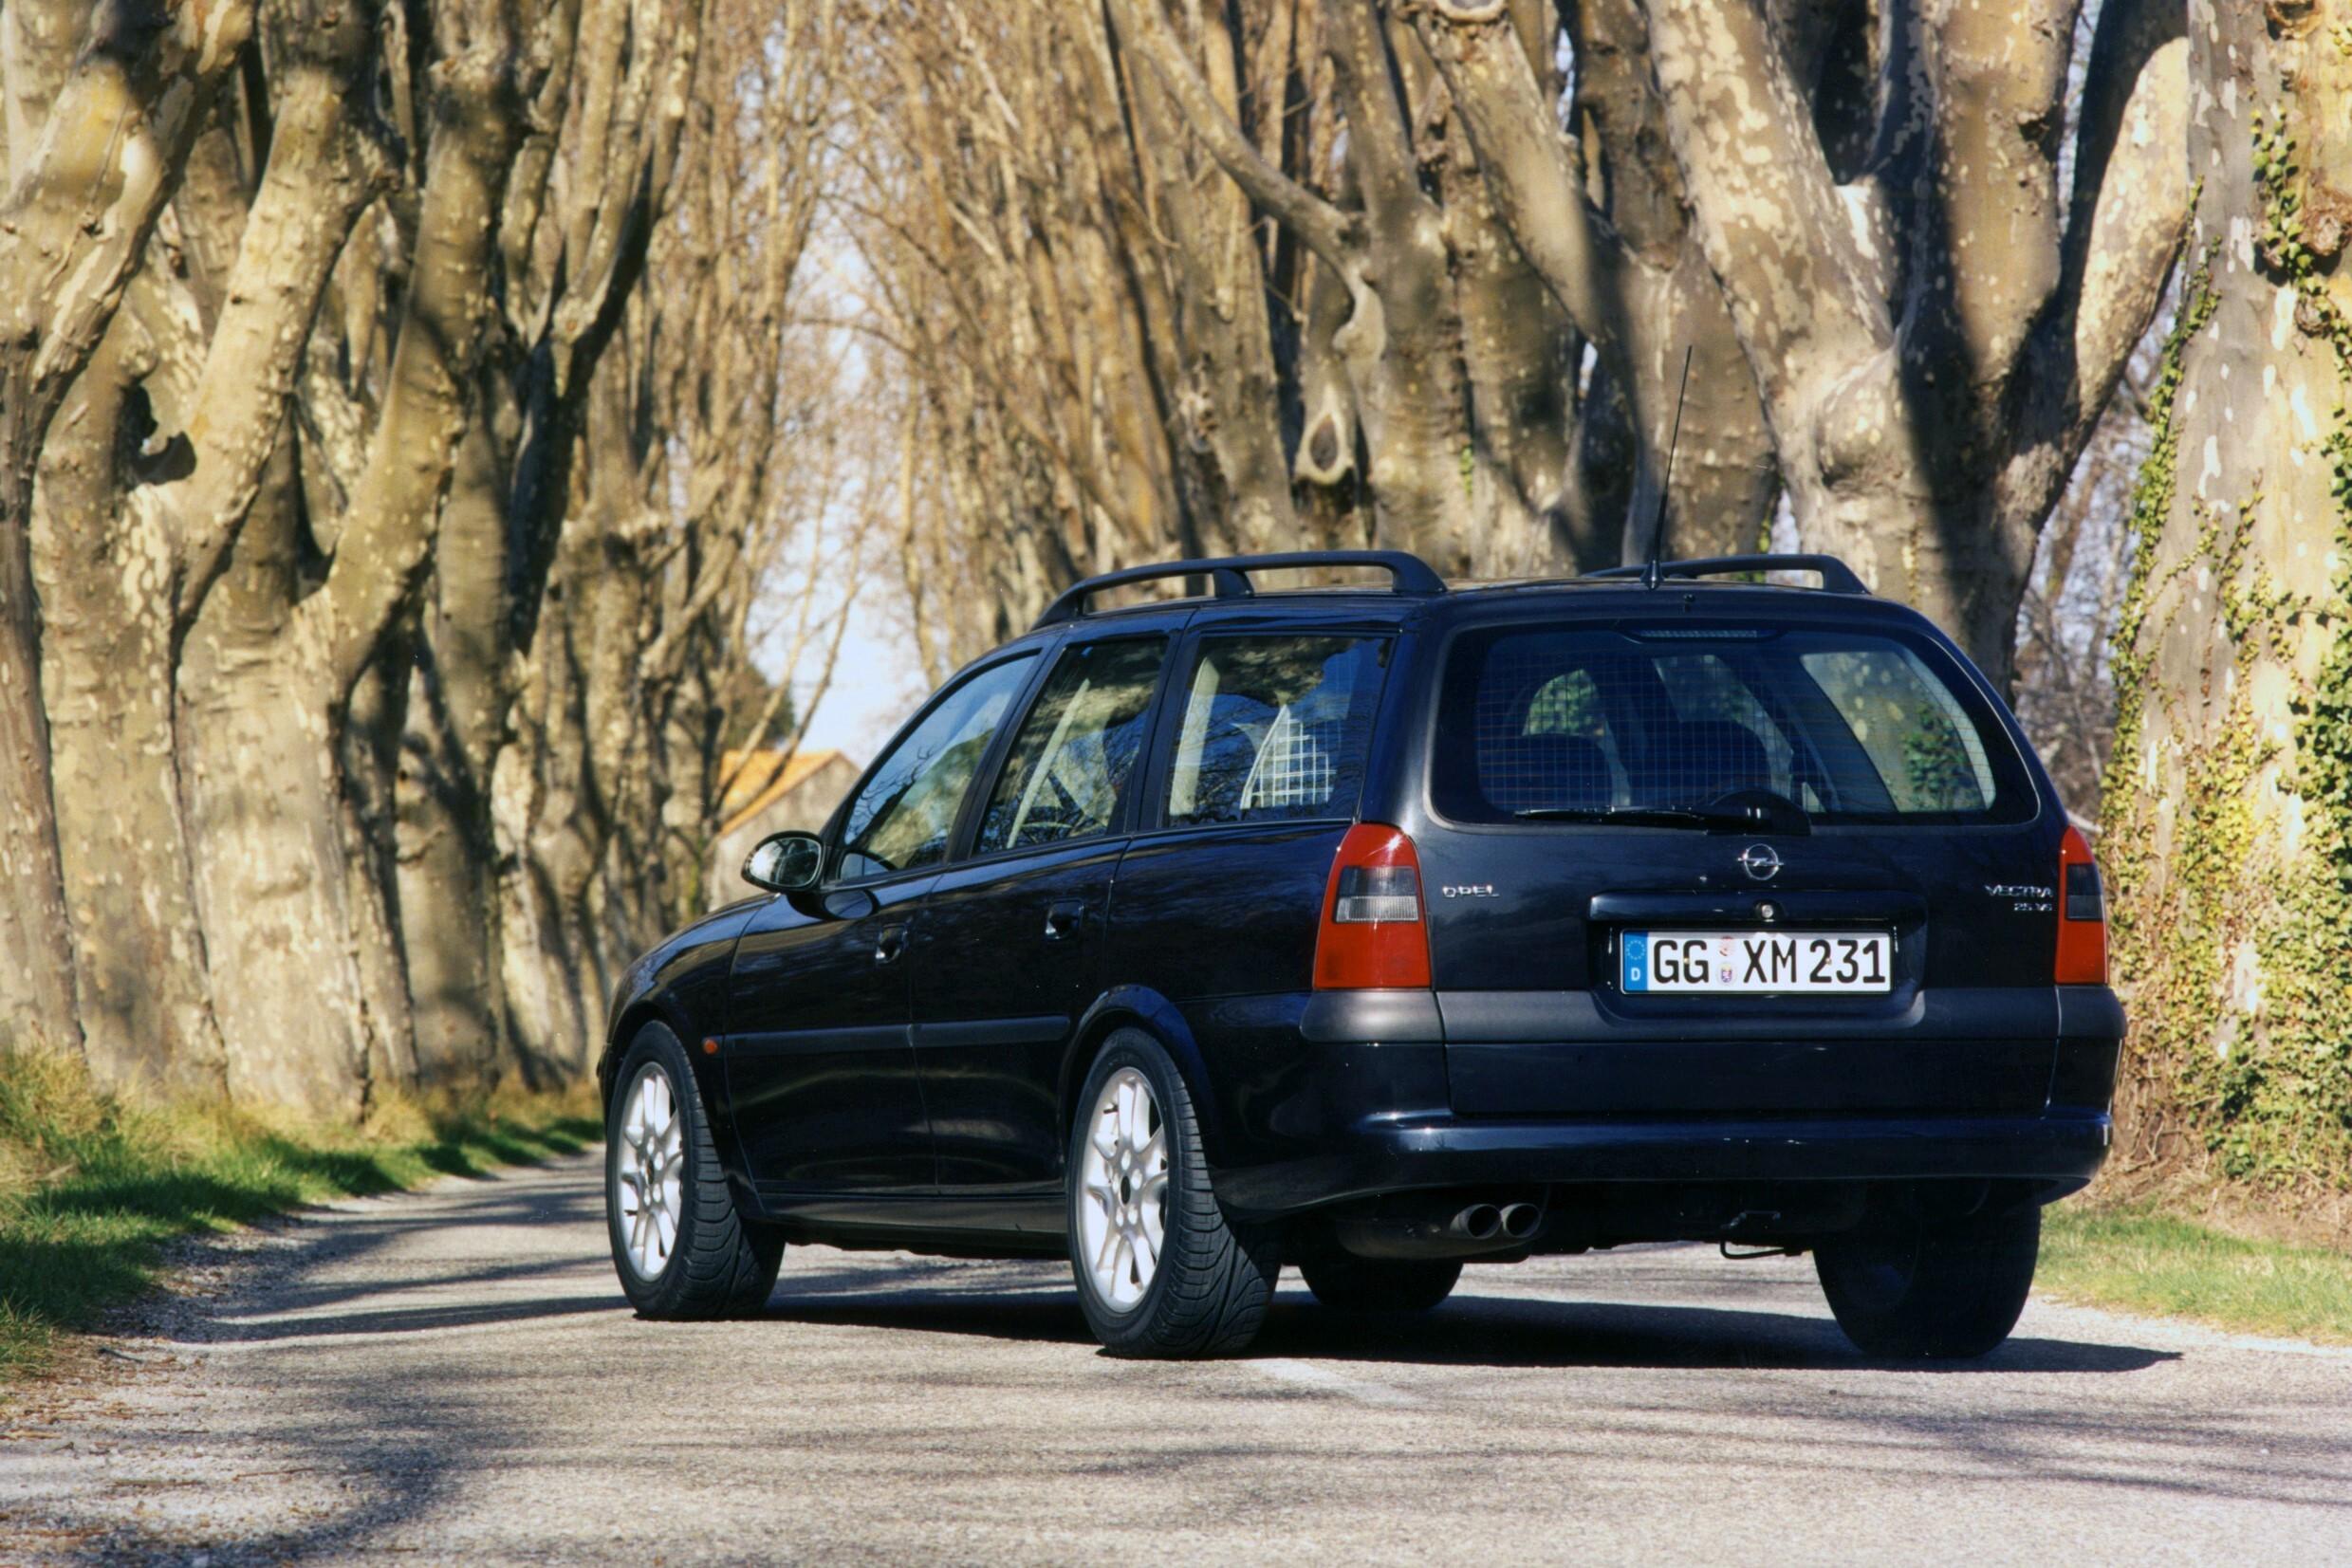 Вектра караван. Opel Vectra b универсал 1999. Opel Vectra универсал 1999. Opel Vectra Caravan. Опель Вектра 1999 универсал.